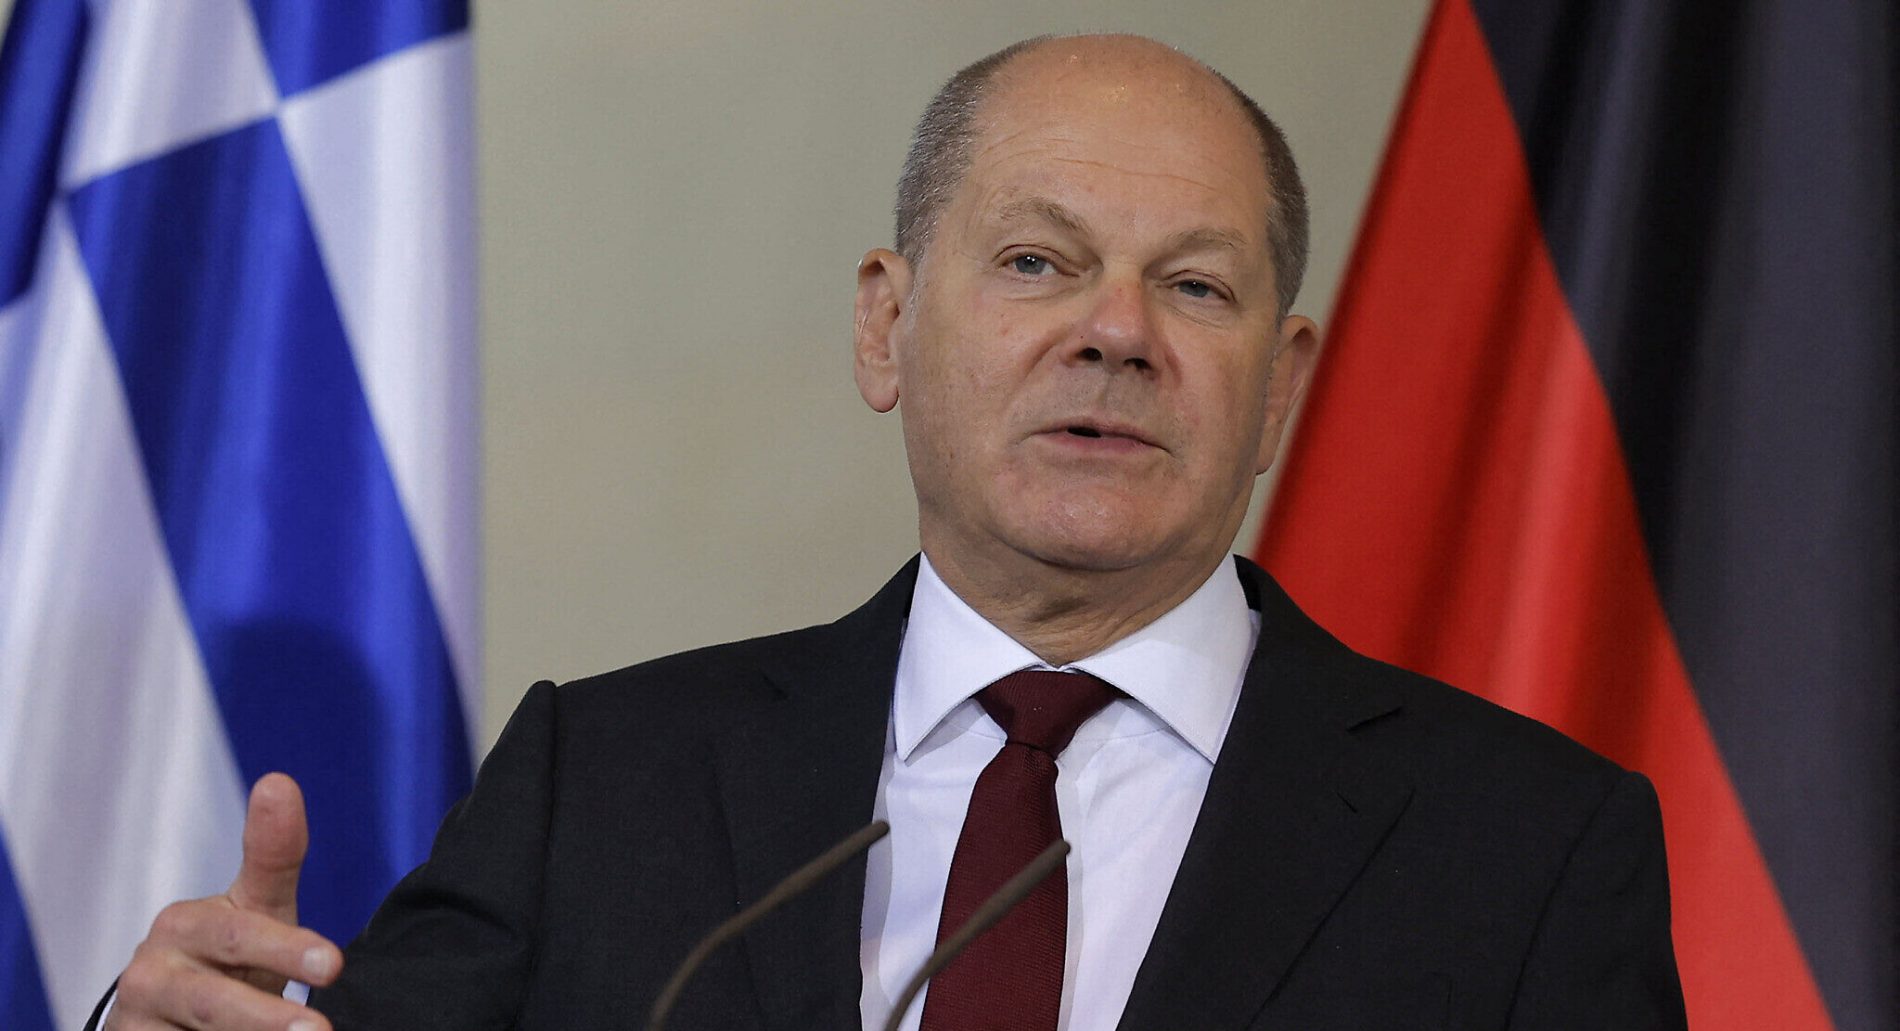 Palestinci osporavaju Scholzove tvrdnje o Izraelu kao ‘demokratiji’